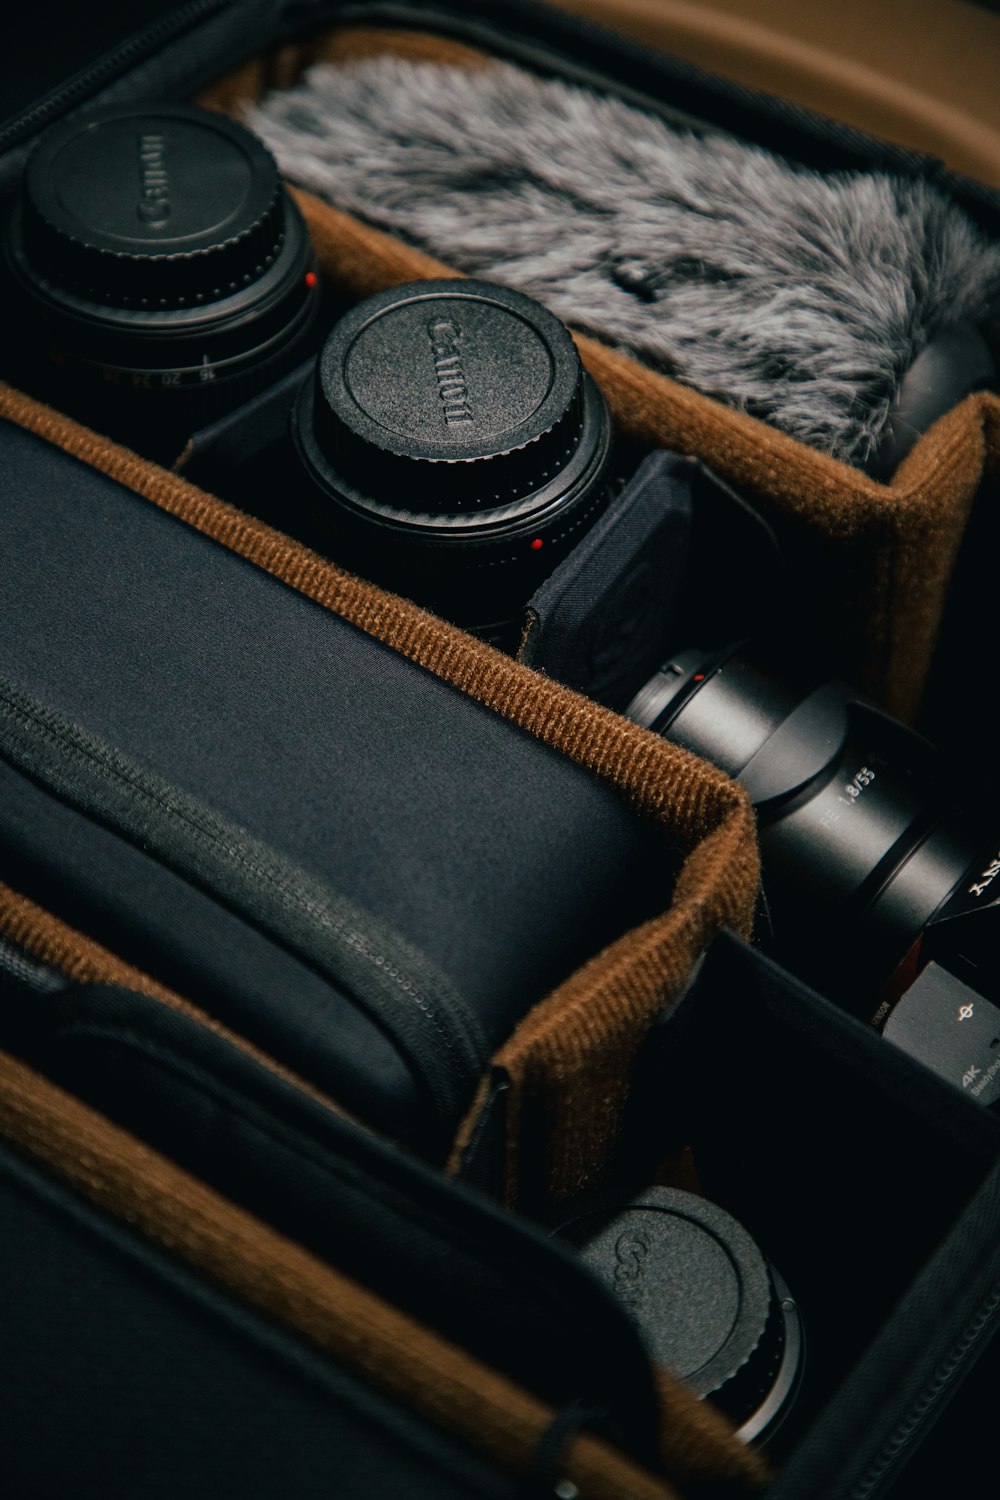 black and silver dslr camera lens on black leather bag